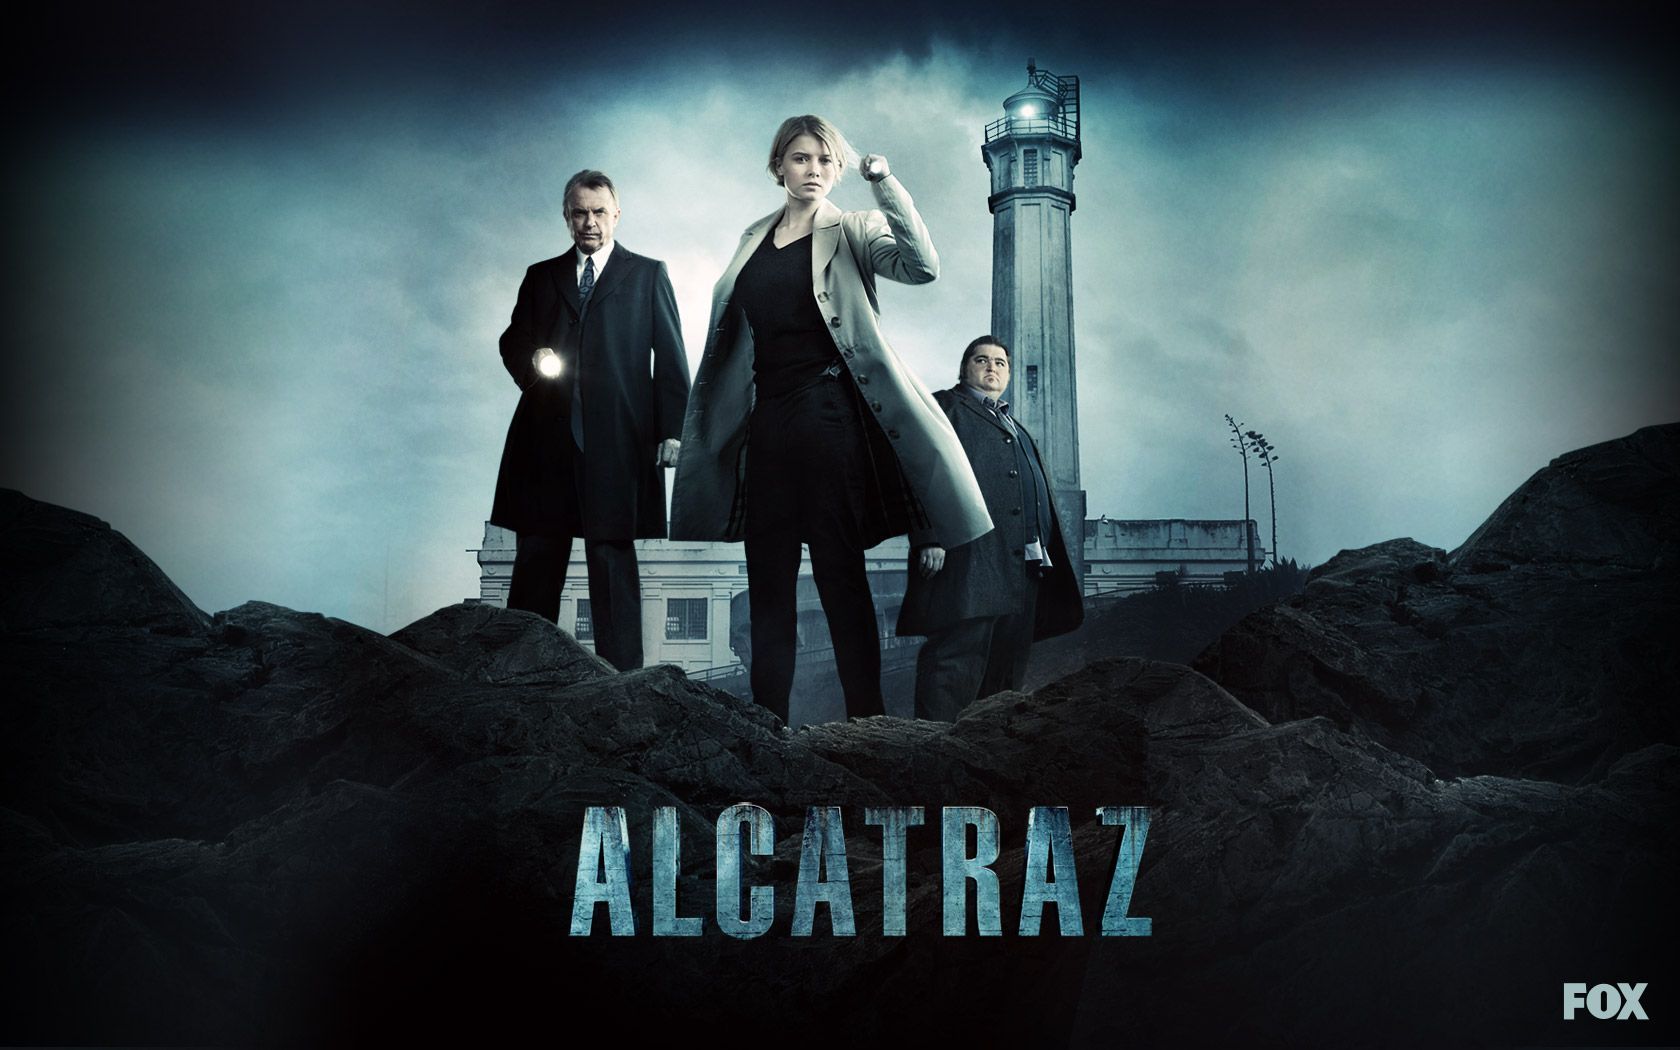 Alcatraz - Alcatraz (TV Show) Wallpaper (29466308) - Fanpop